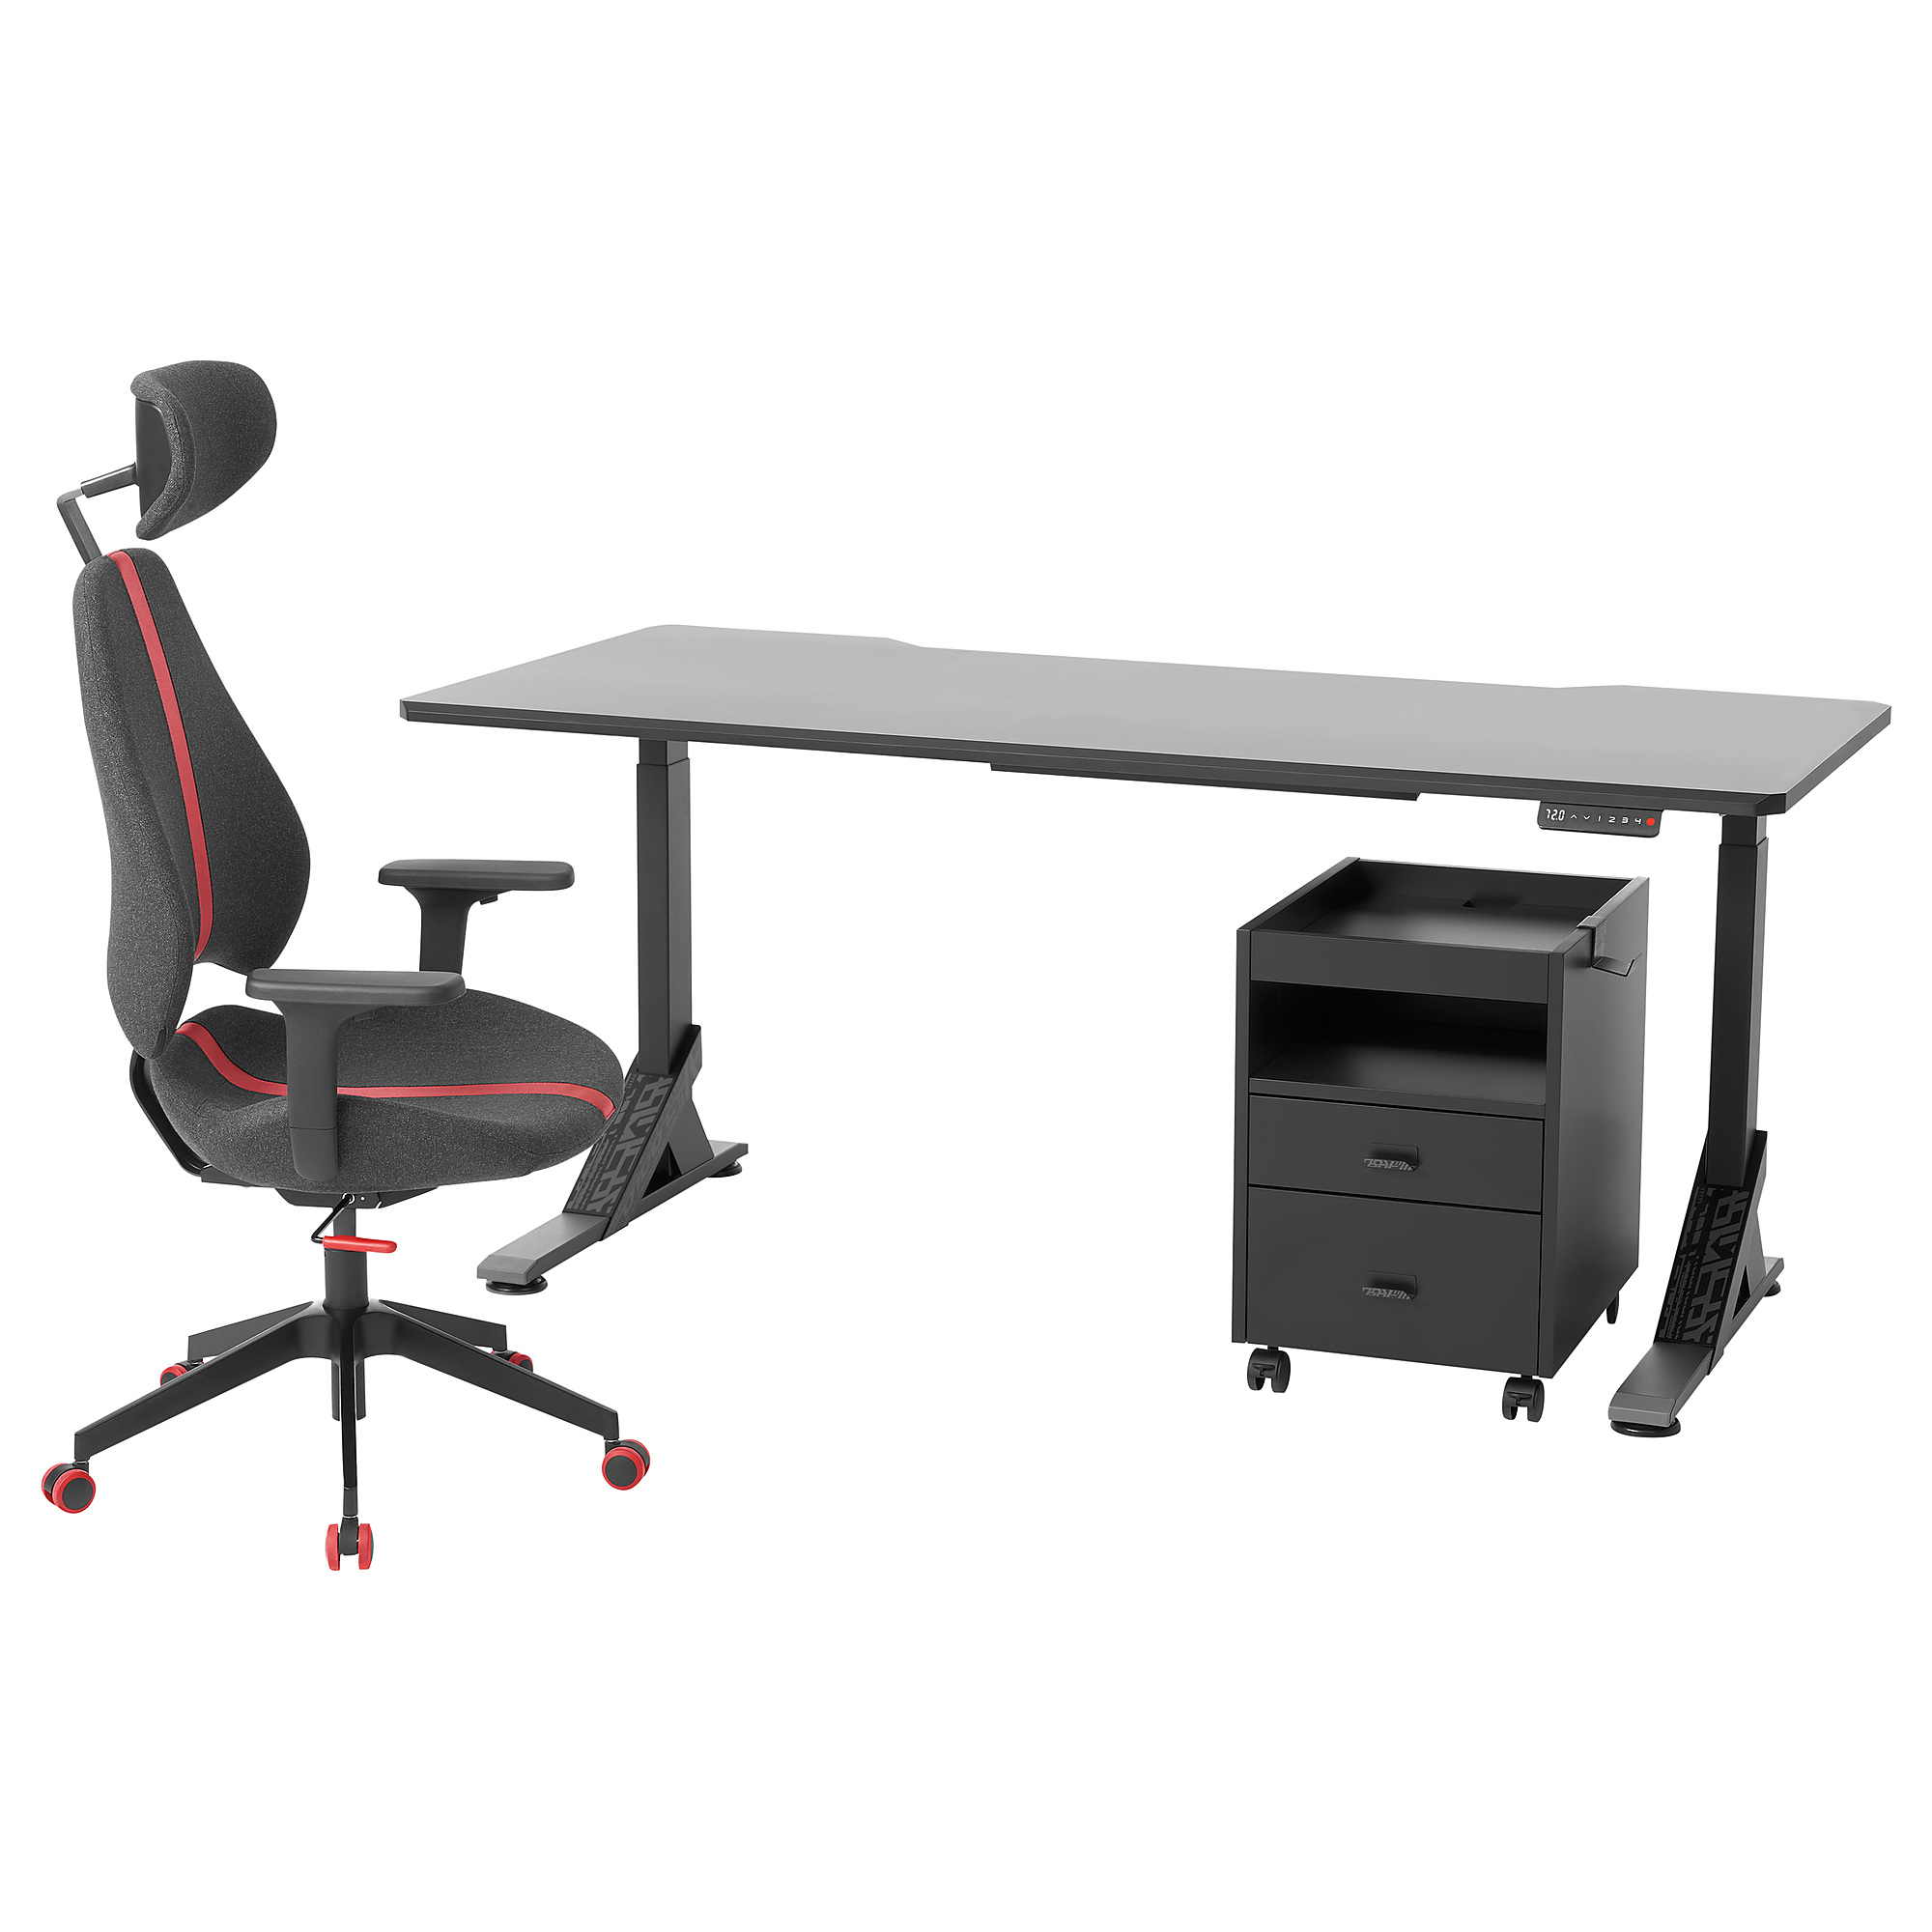 UPPSPEL/GRUPPSPEL desk, chair and drawer unit